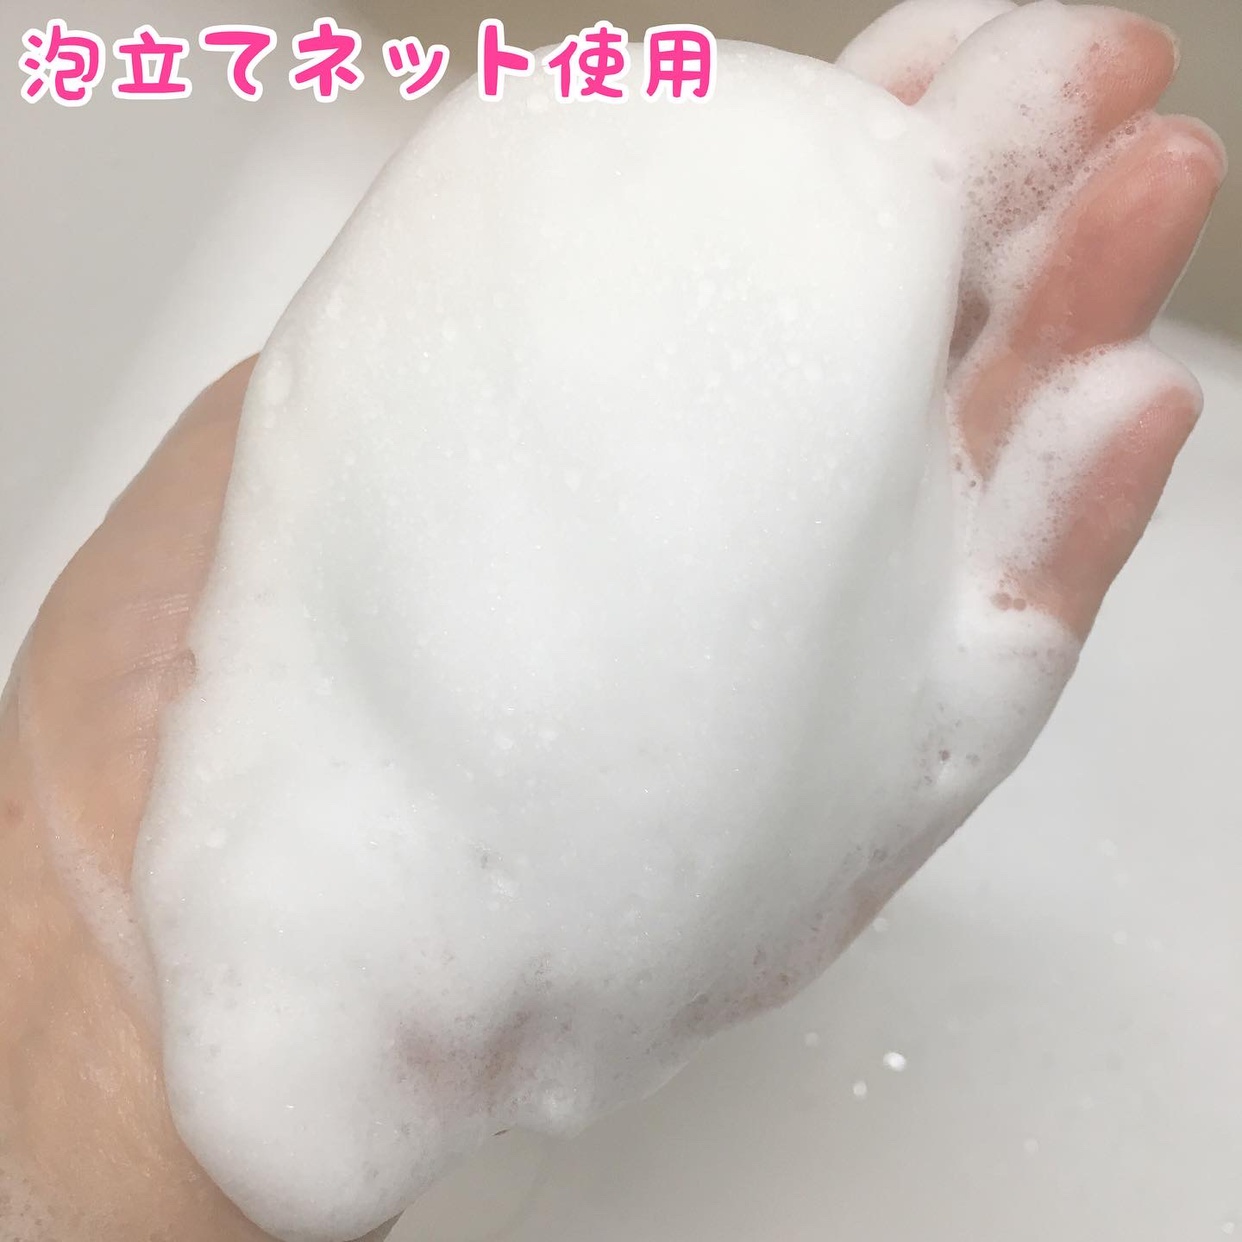 麗凍化粧品(Reitou Cosme) 薔薇はちみつ石鹸を使ったぶるどっくさんのクチコミ画像7